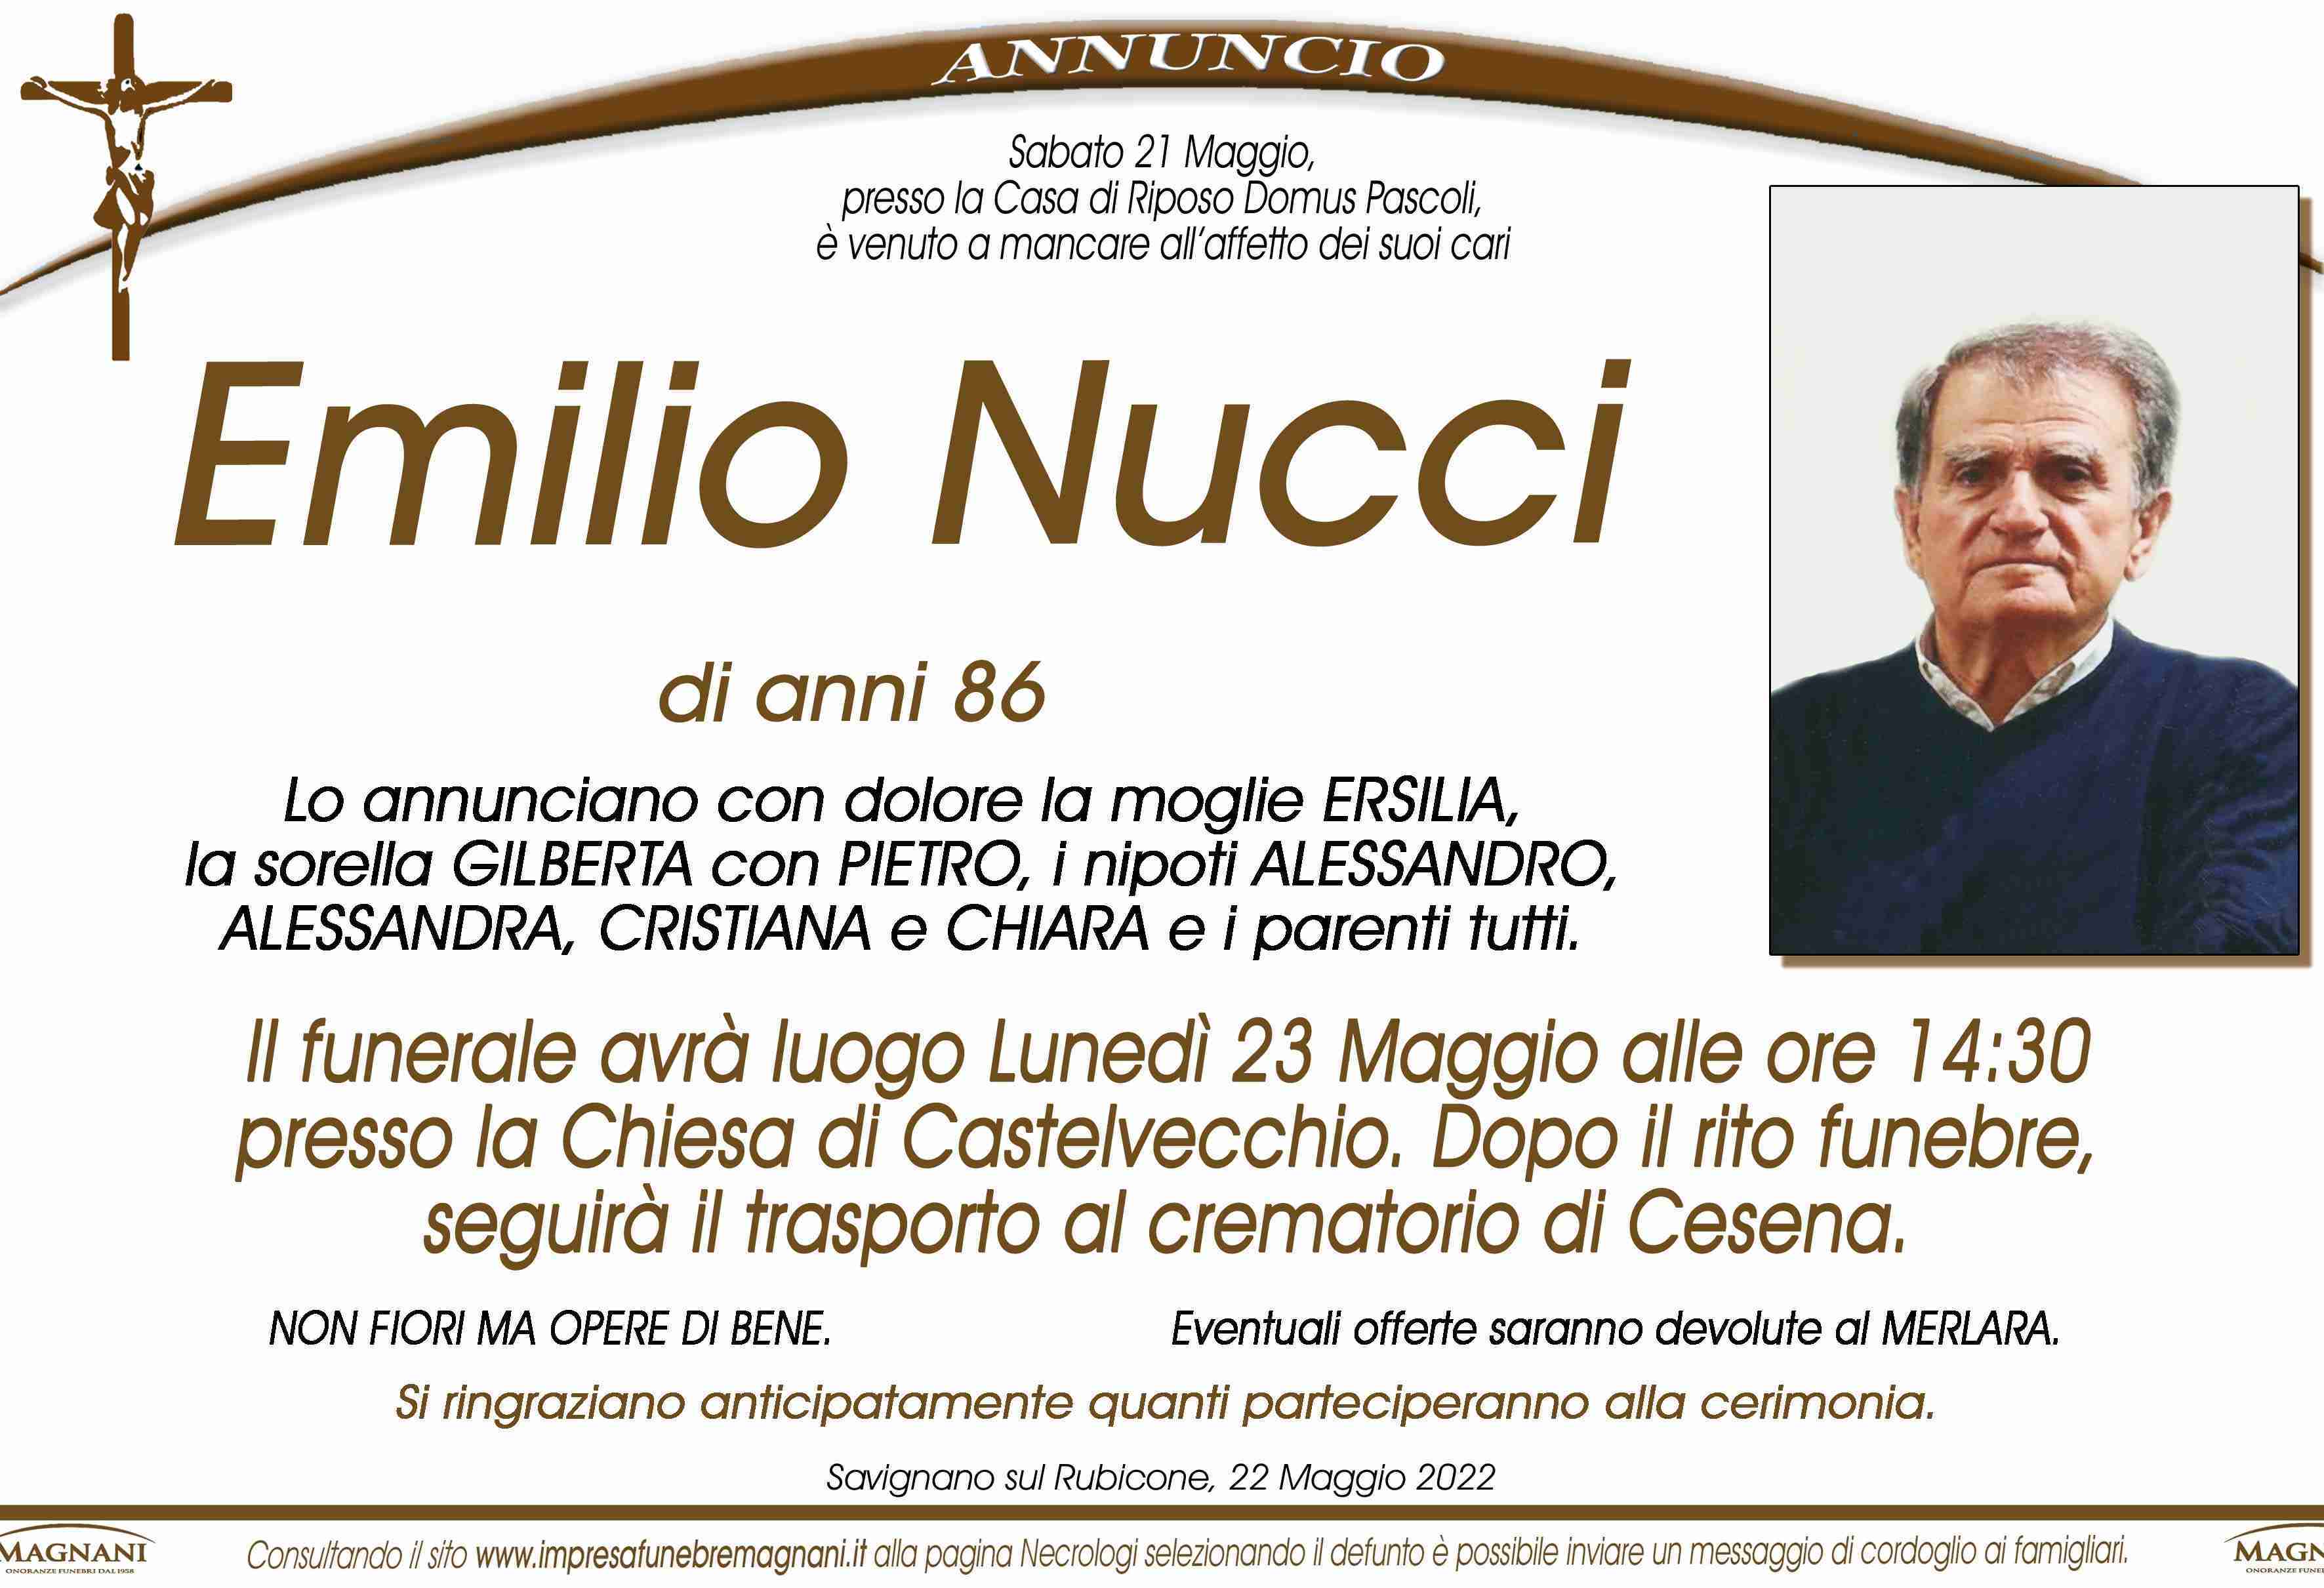 Emilio Nucci